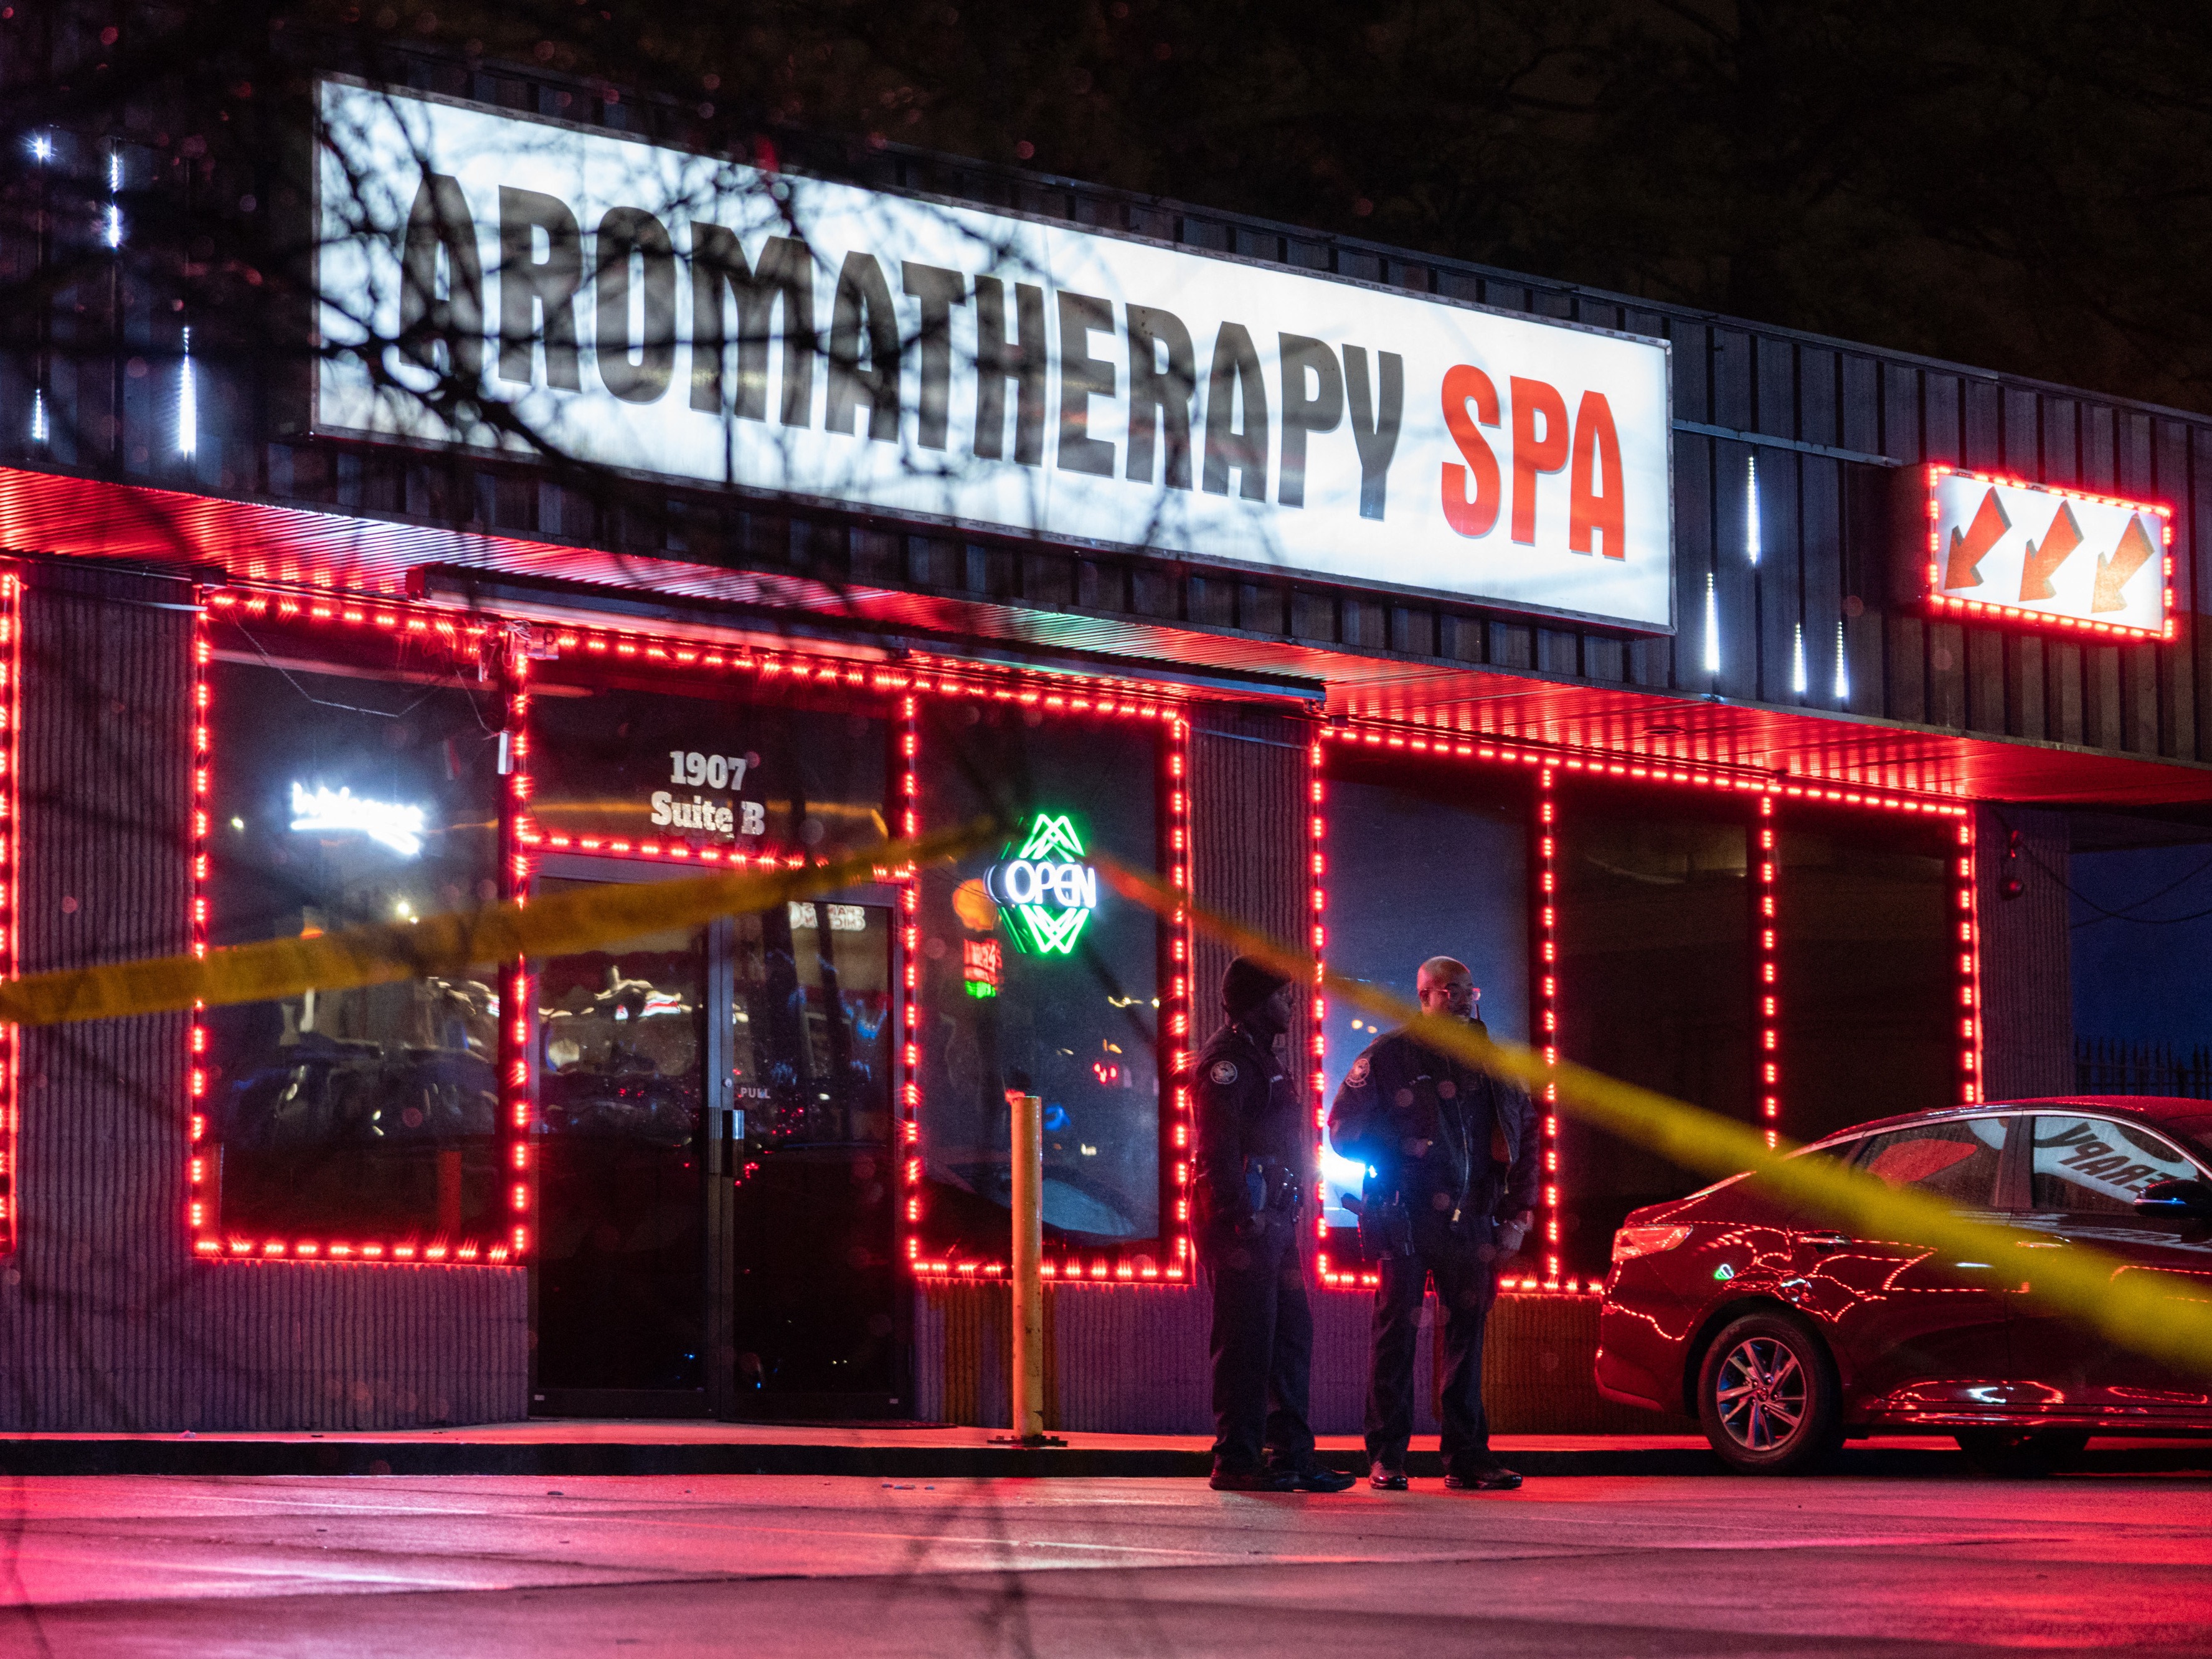 Aromatherapy Spa in metro Atlanta